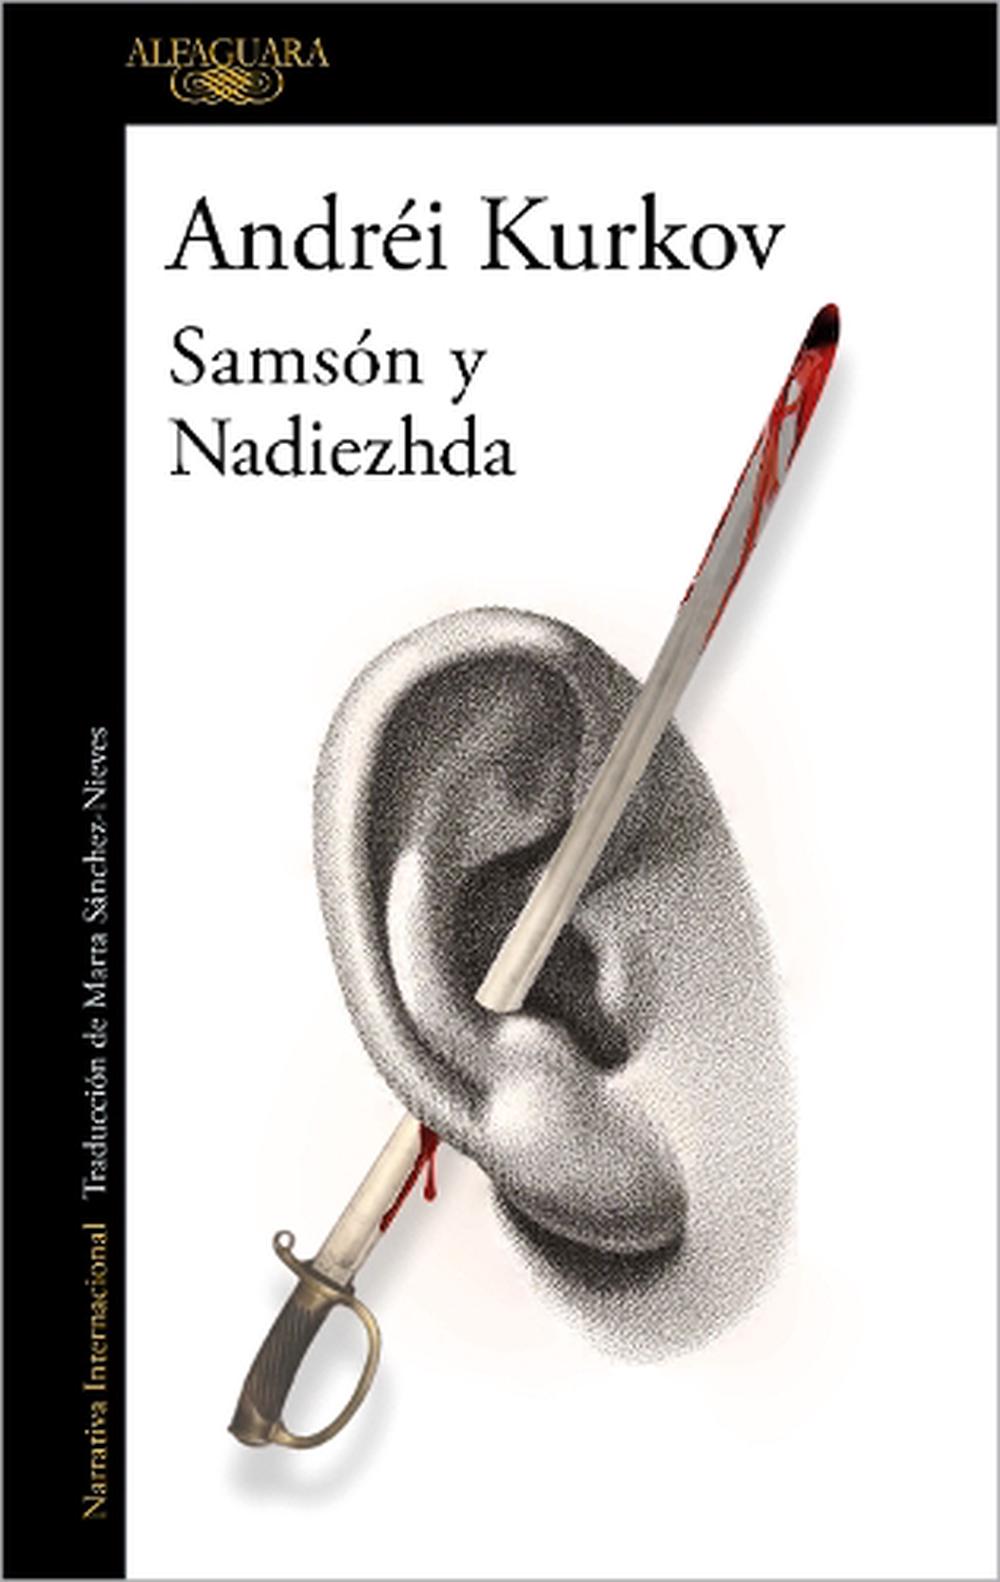 Sherlock Holmes. Novelas / Sherlock Holmes. Novels (Penguin Clasicos /  Penguin Classics) (Spanish Edition)